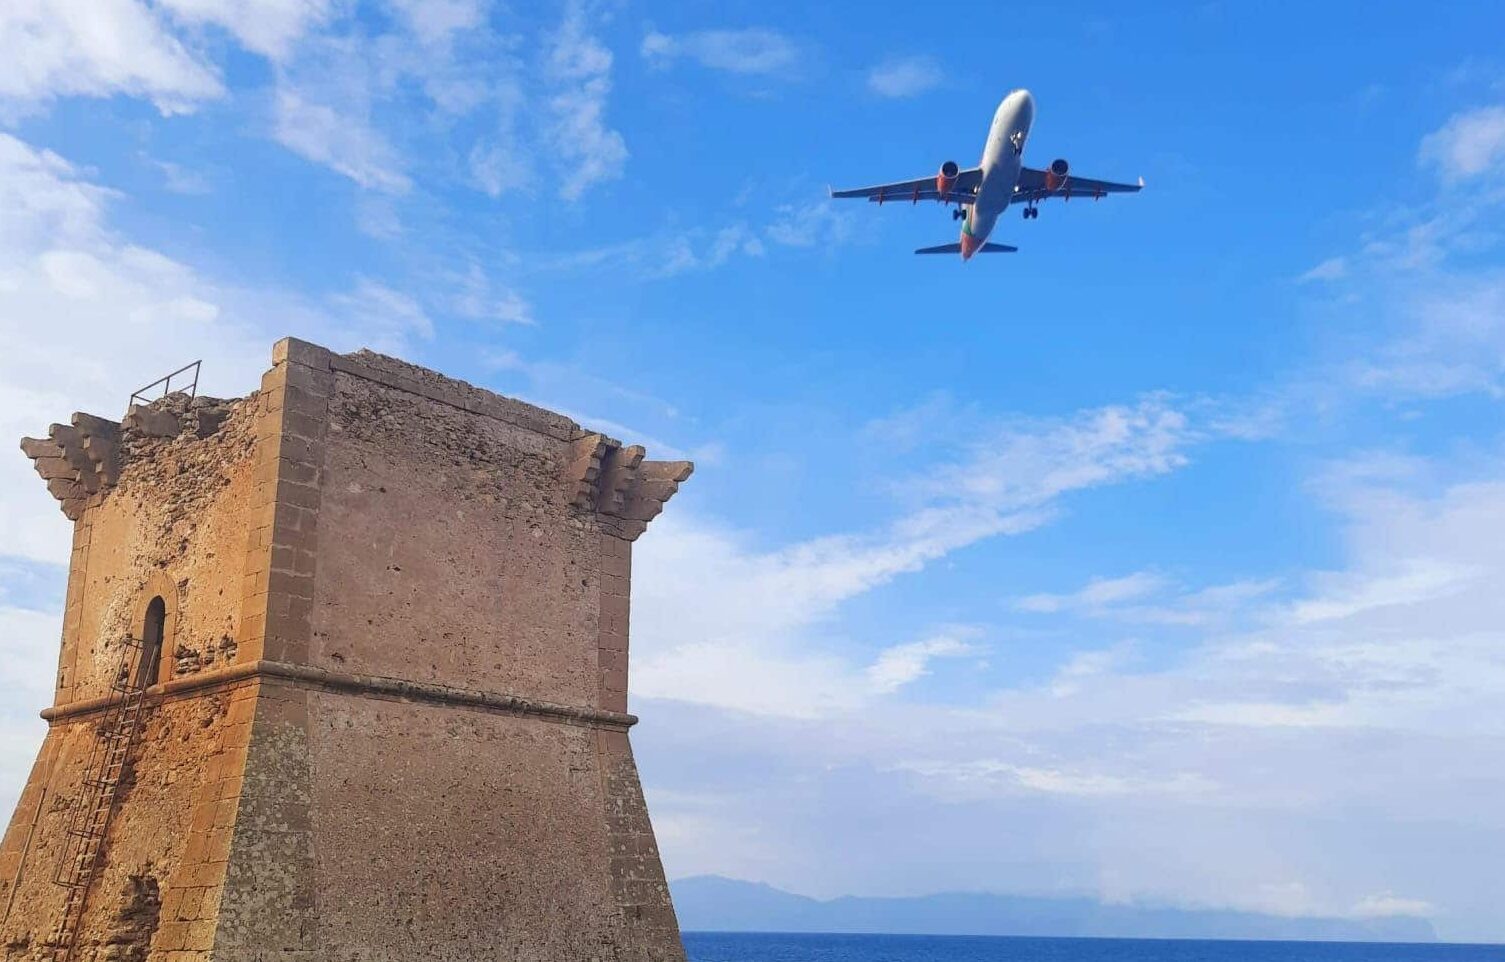 Aeroporto di Palermo, si svolta: più passeggieri e nuove rotte